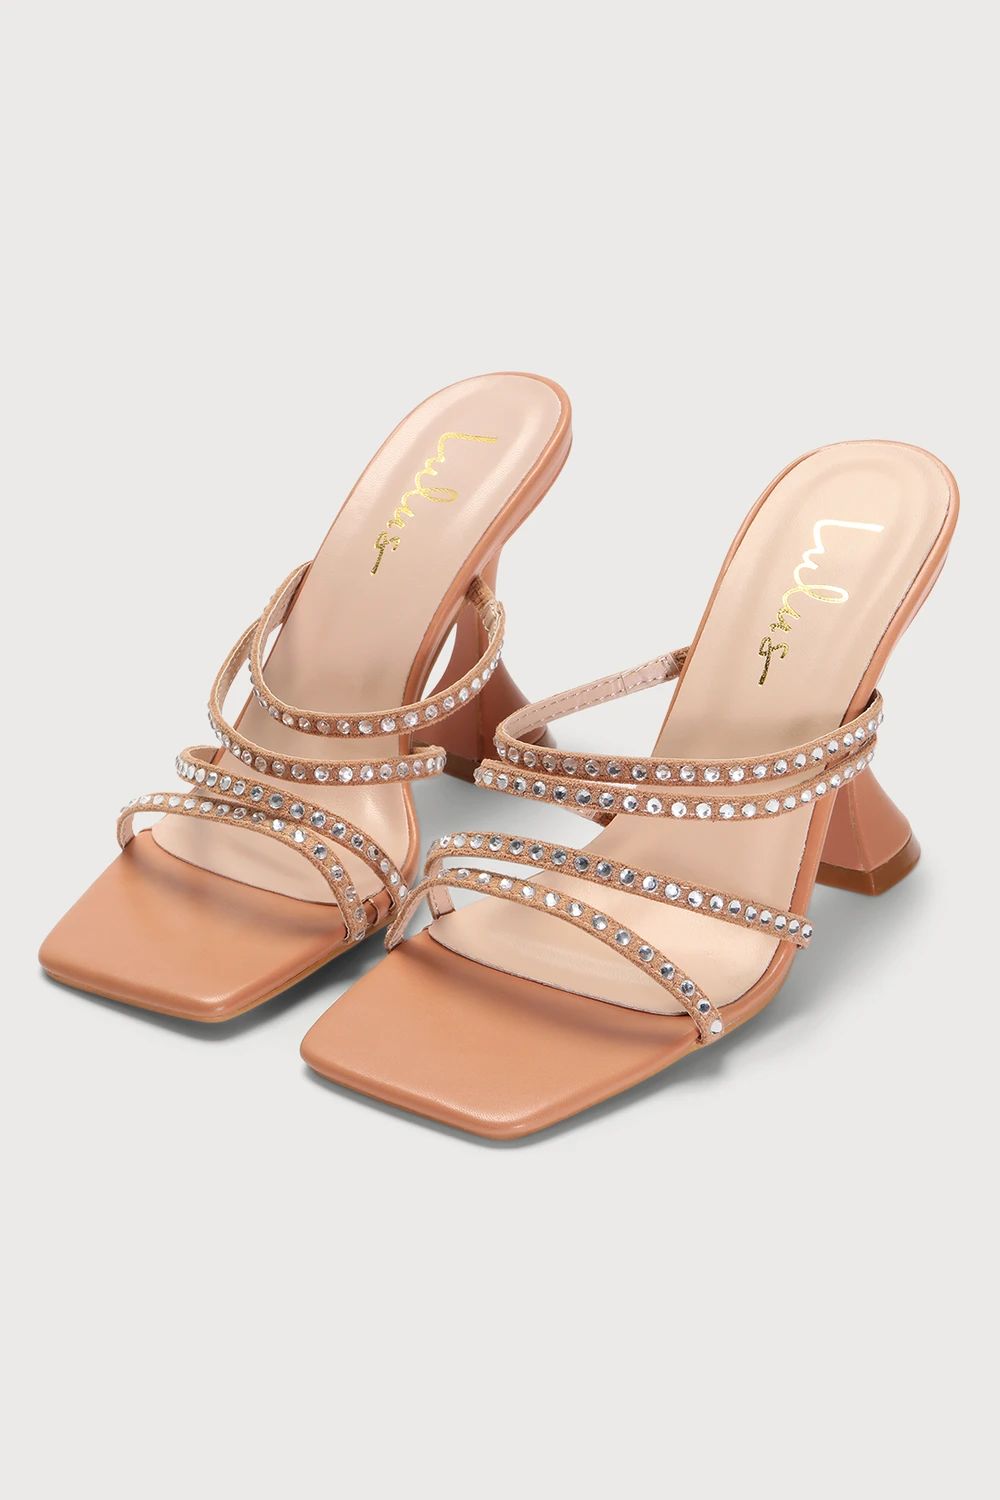 Carlotta Light Nude Rhinestone High Heel Slide Sandals | Lulus (US)